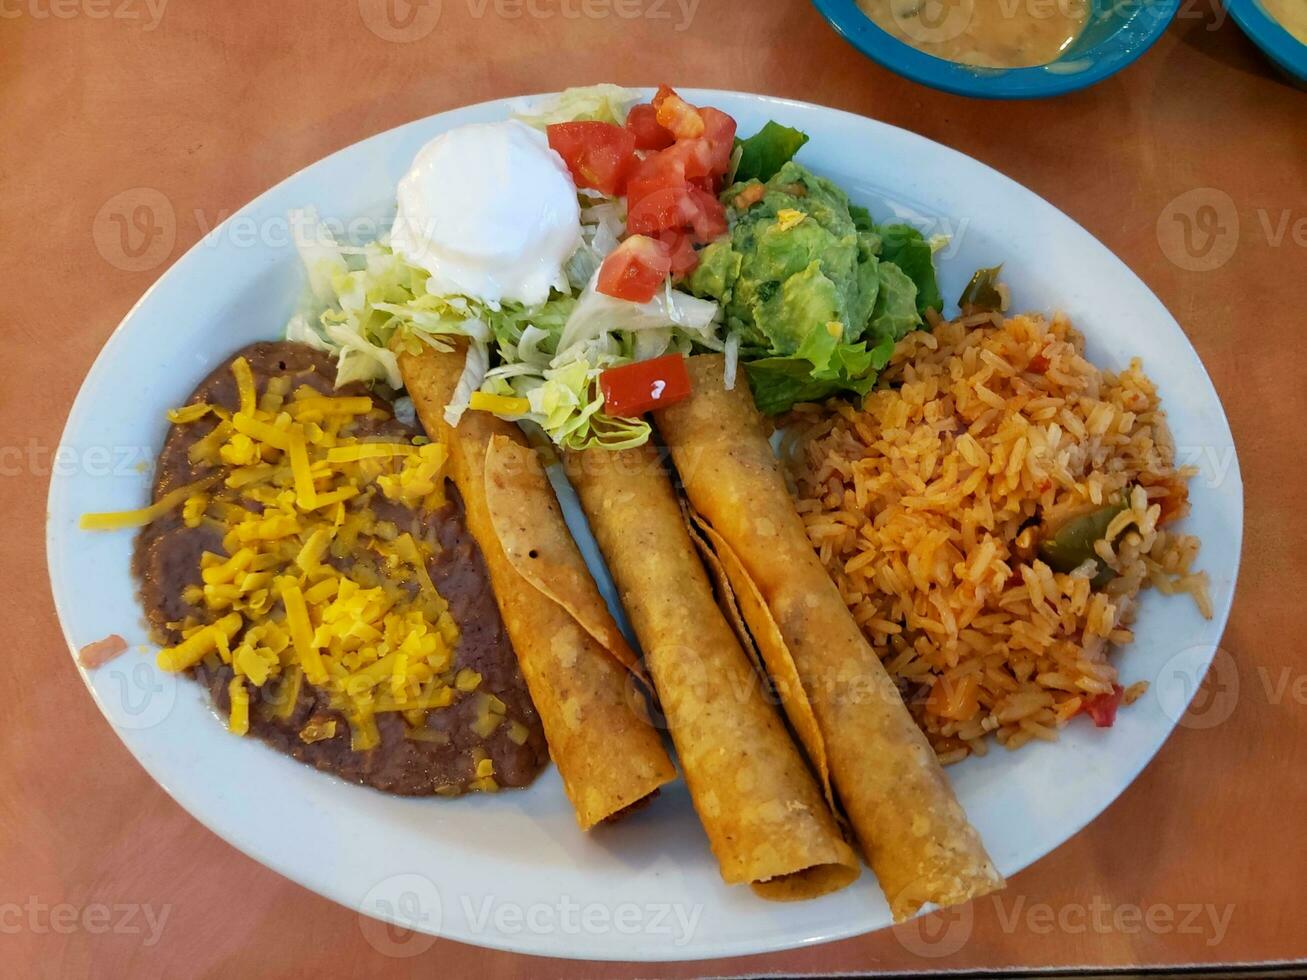 traditionell Mexikaner Essen auf ein Teller im ein Restaurant im Mexiko foto